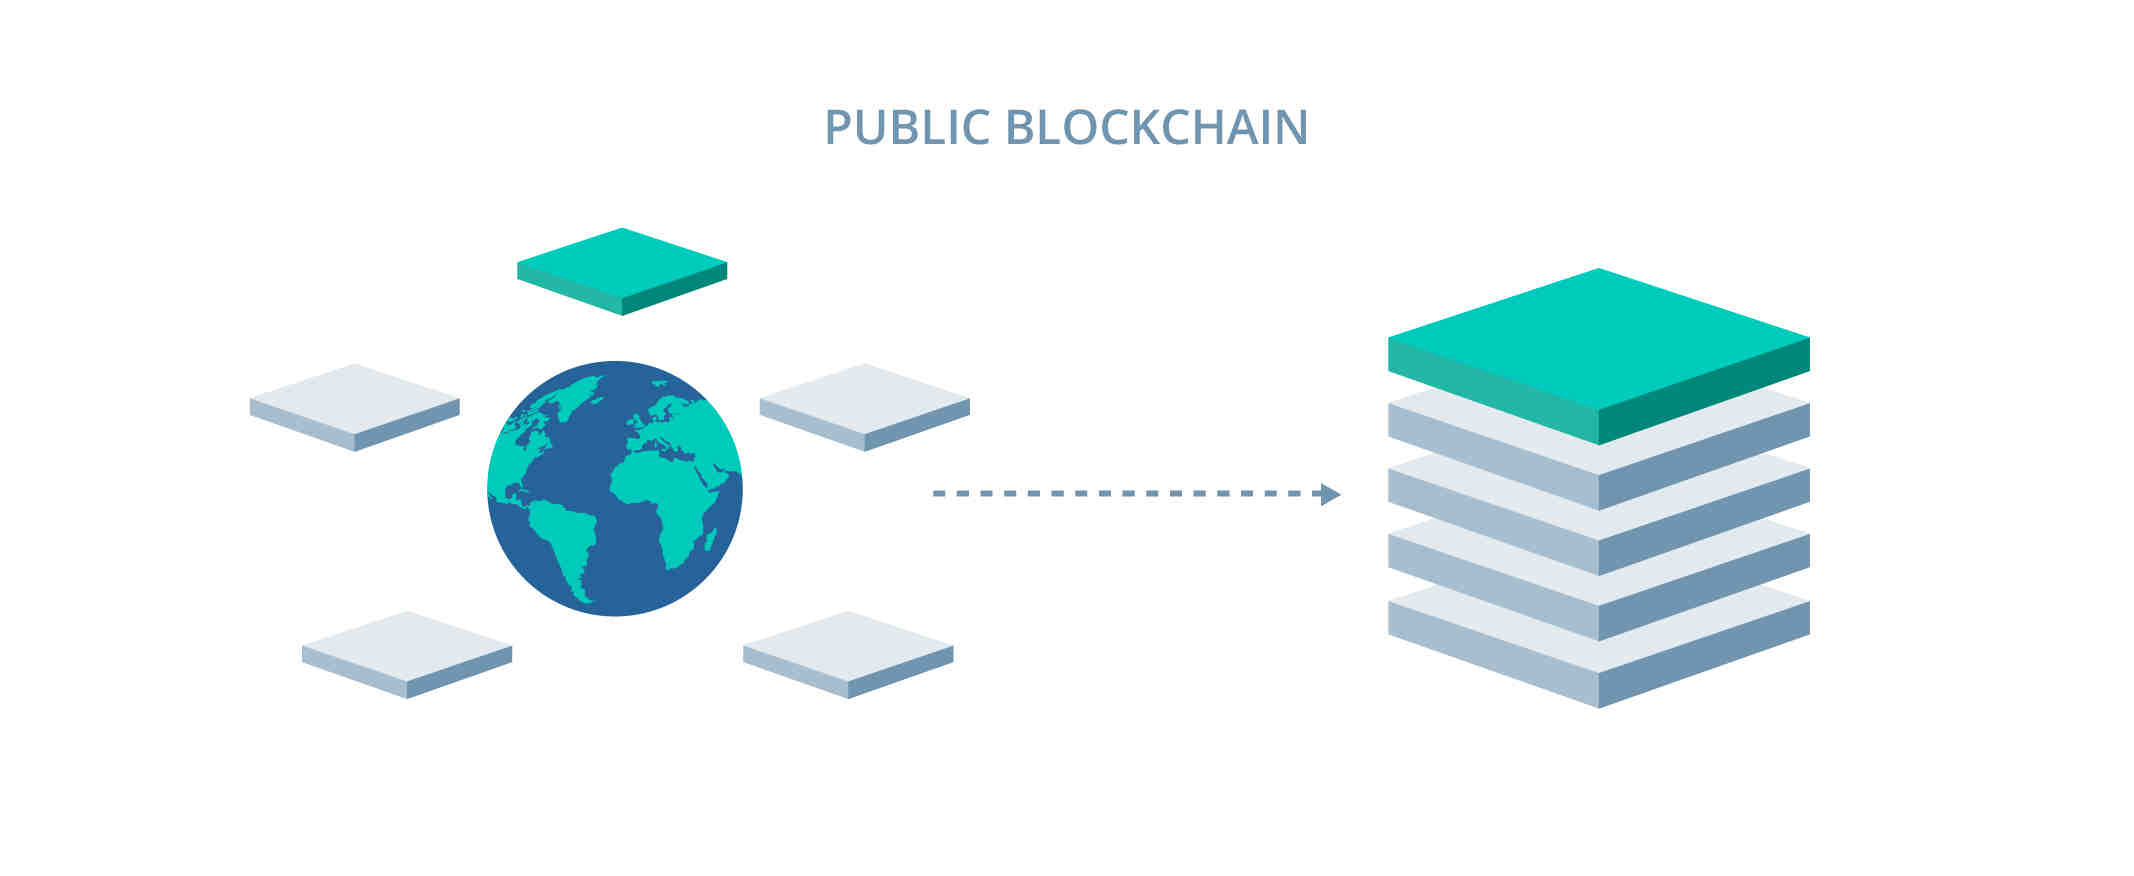 Comment les blocs sont Chainés dans la blockchain ?